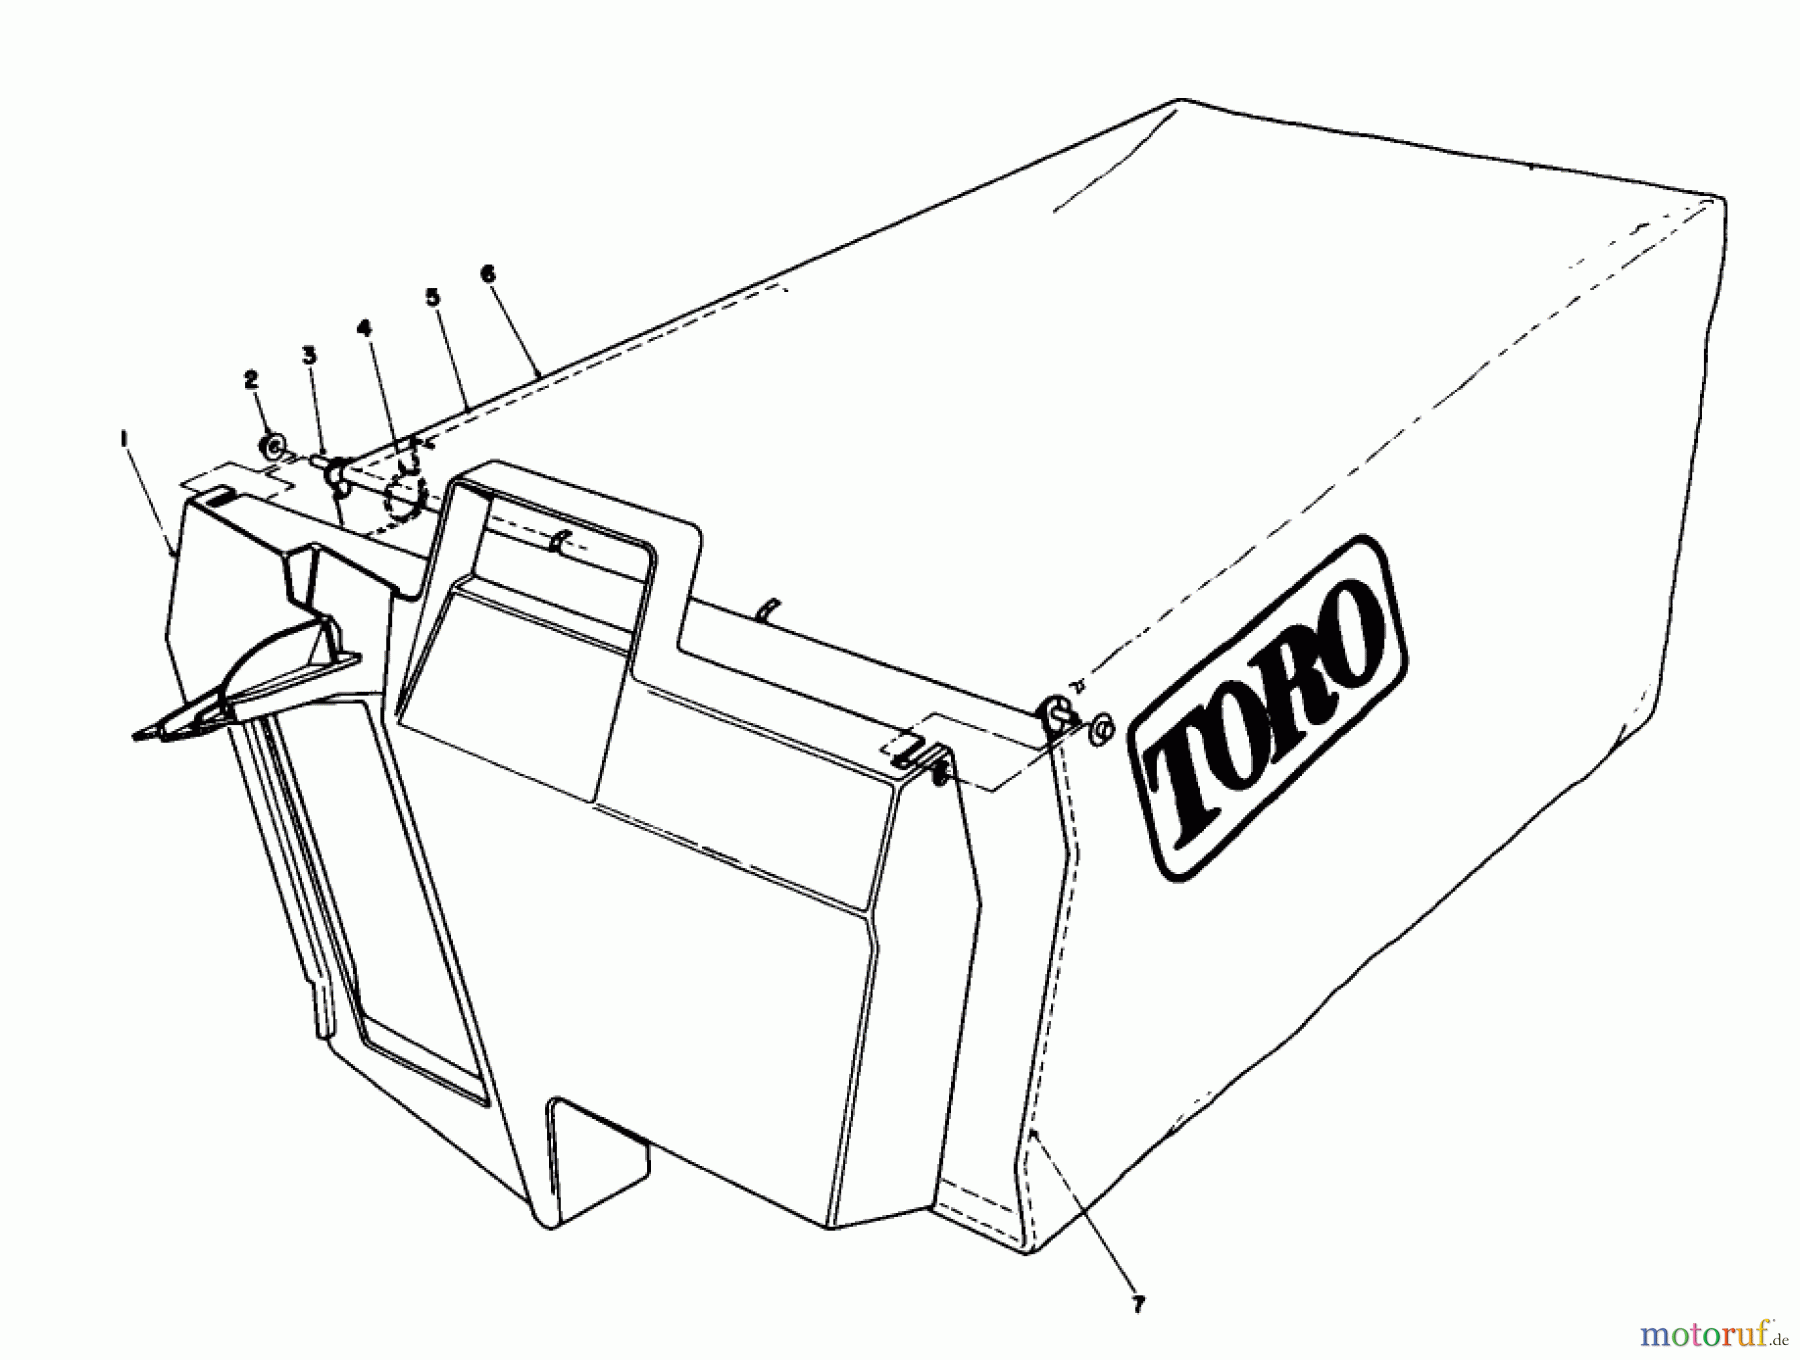  Toro Neu Mowers, Walk-Behind Seite 2 22035C - Toro Lawnmower, 1989 (9000001-9999999) GRASS BAG ASSEMBLY NO. 11-5609